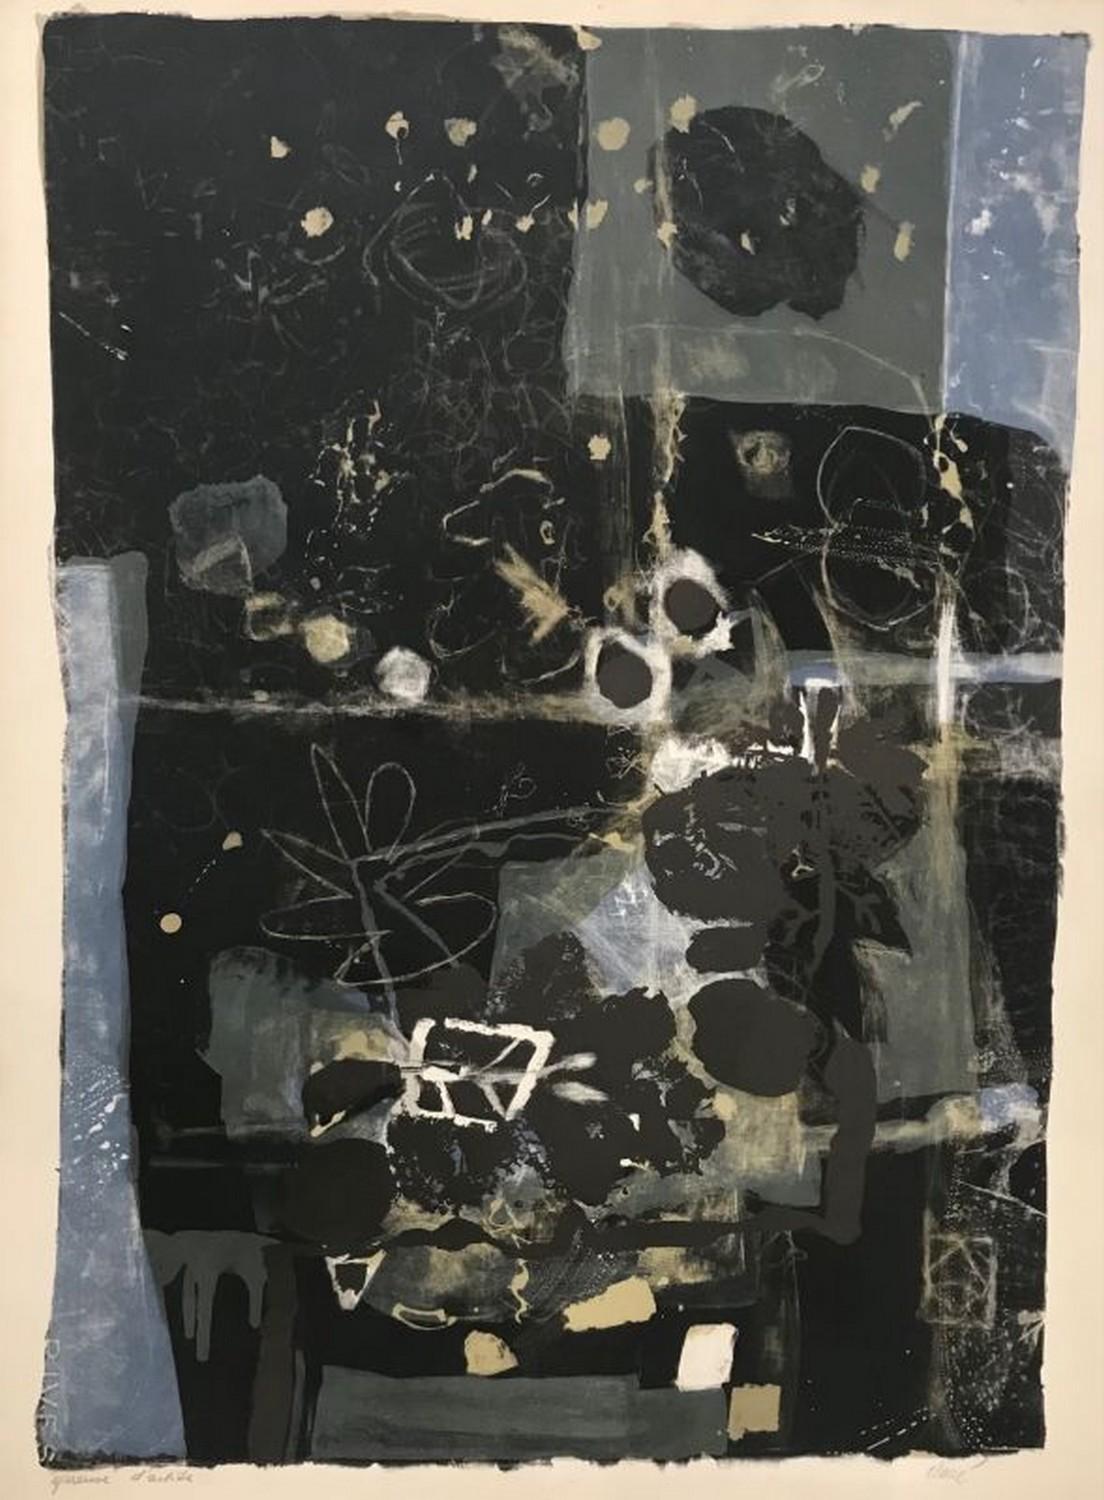 Abstract Print Antoni Clavé - Feuille de nuit 